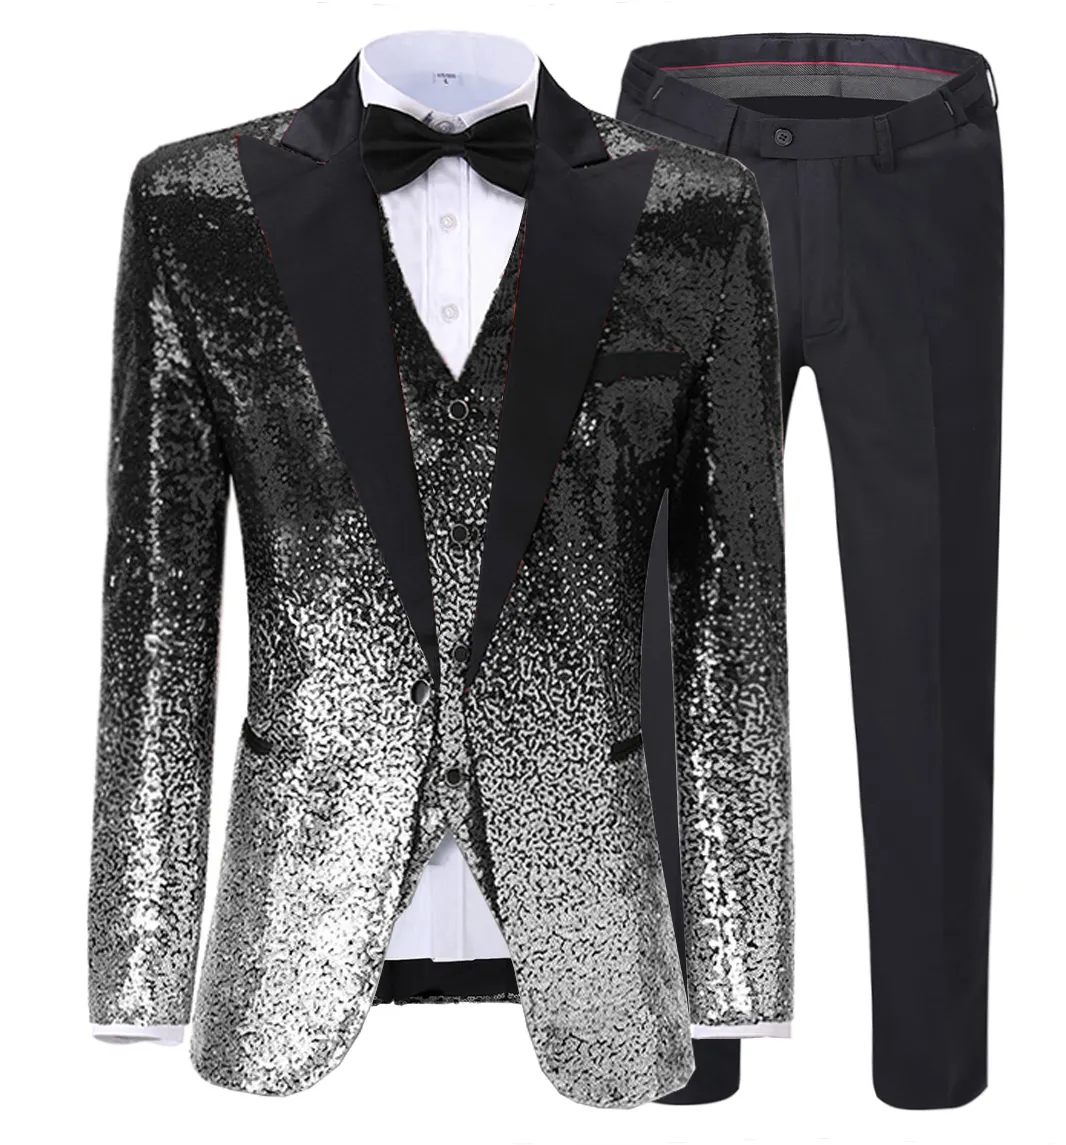 Mens Suit 3 Pieces Sequin Color Shiny Sequin Suit Notch Lapel for Wedding/Party Groom Banquet Nightclub (Blazer+Vest+Pant)